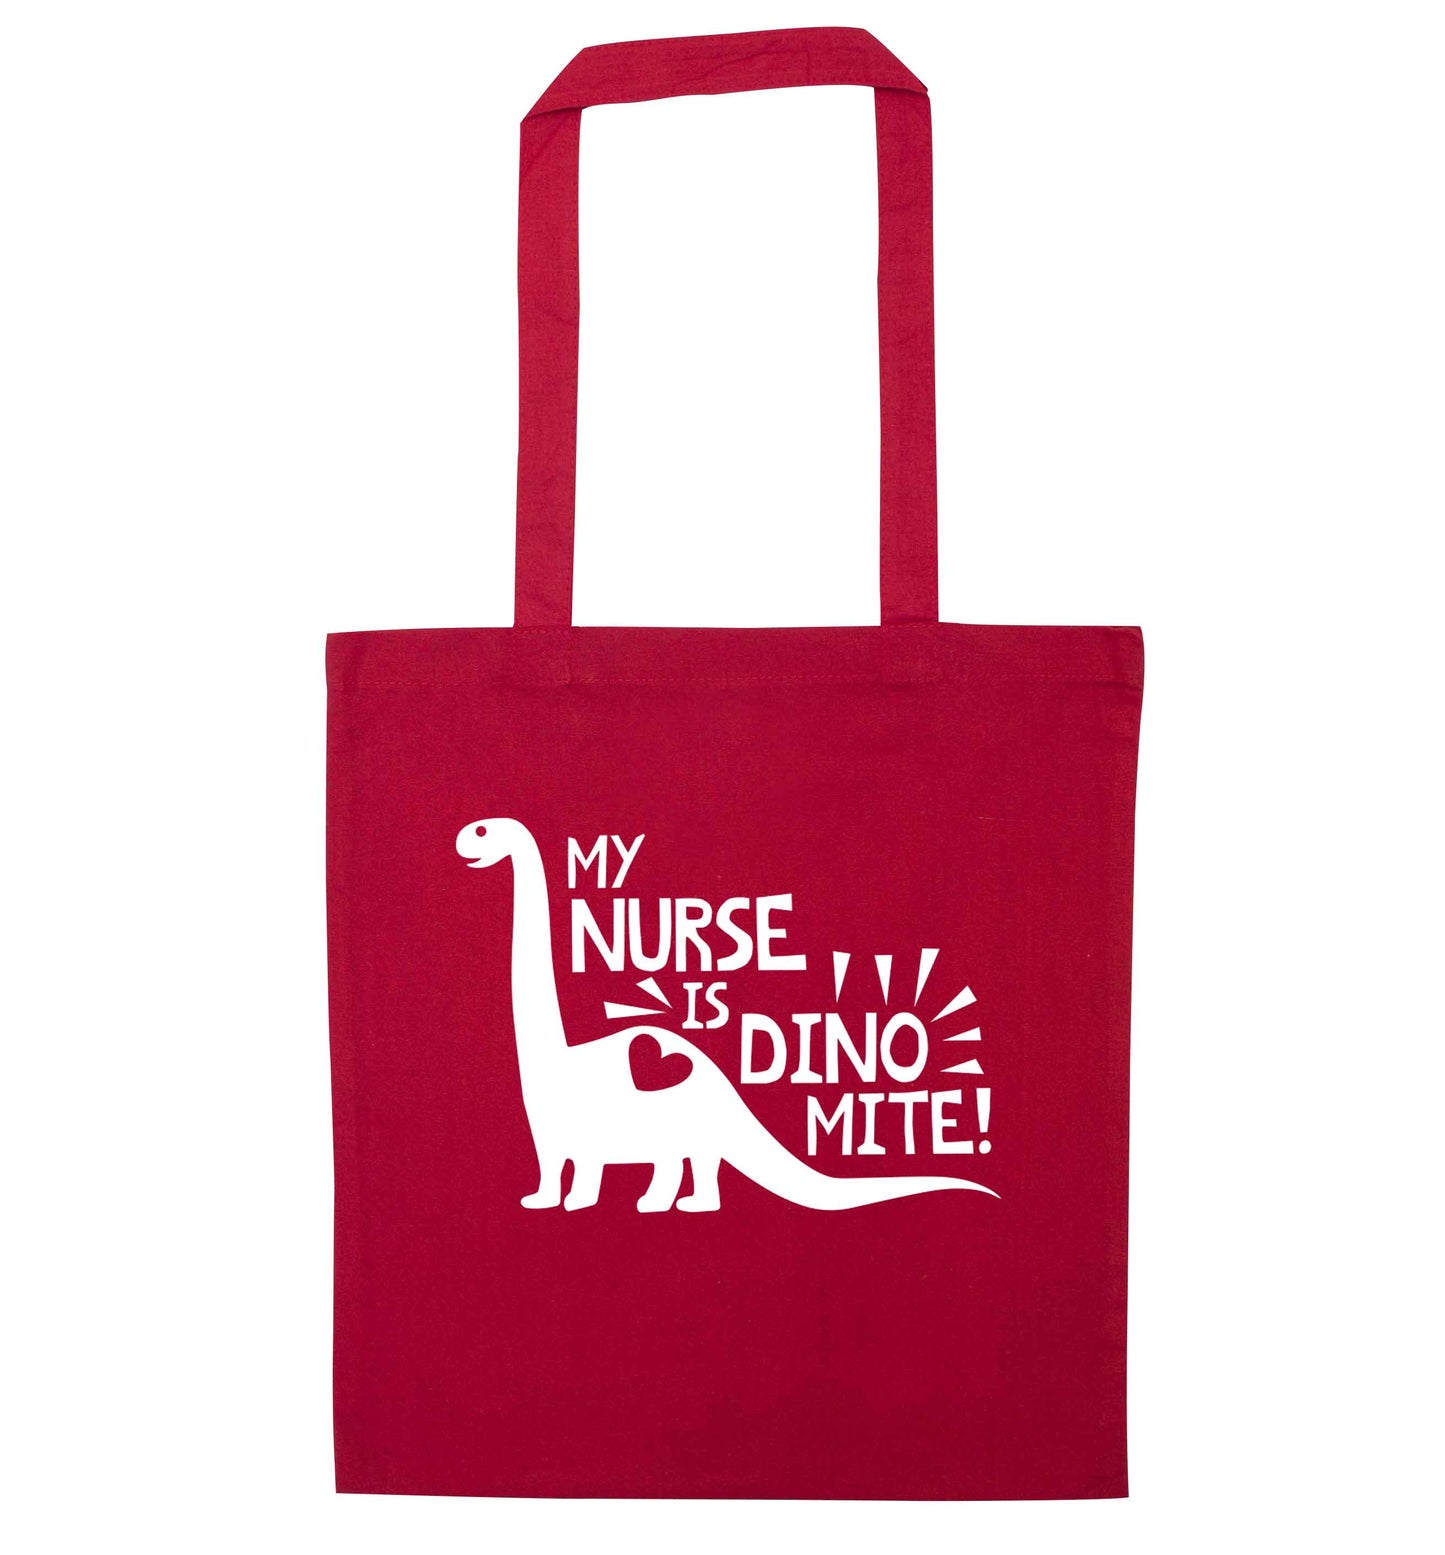 My nurse is dinomite! red tote bag